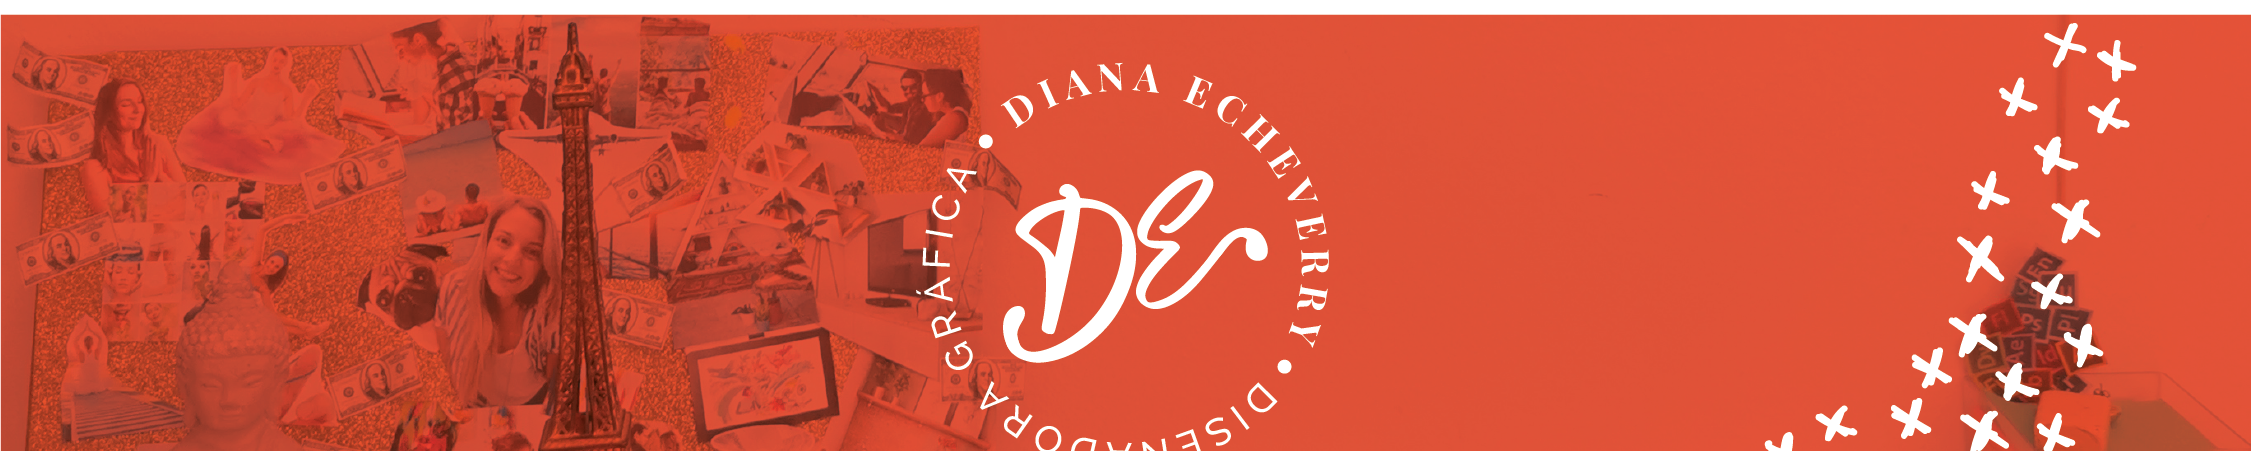 Baner profilu użytkownika Diana Echeverry